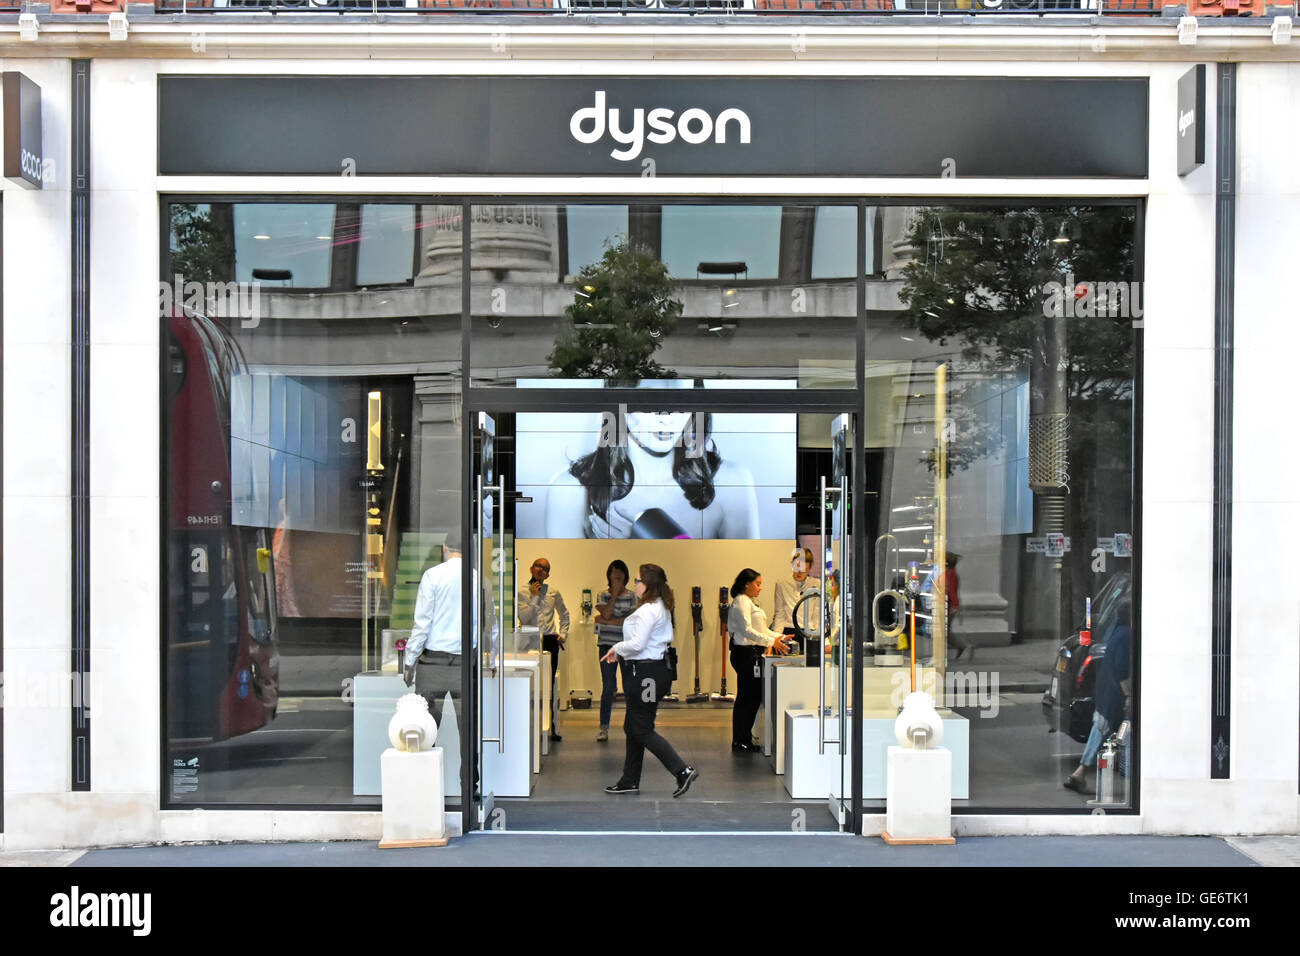 Dyson shop Banque de photographies et d'images à haute résolution - Alamy